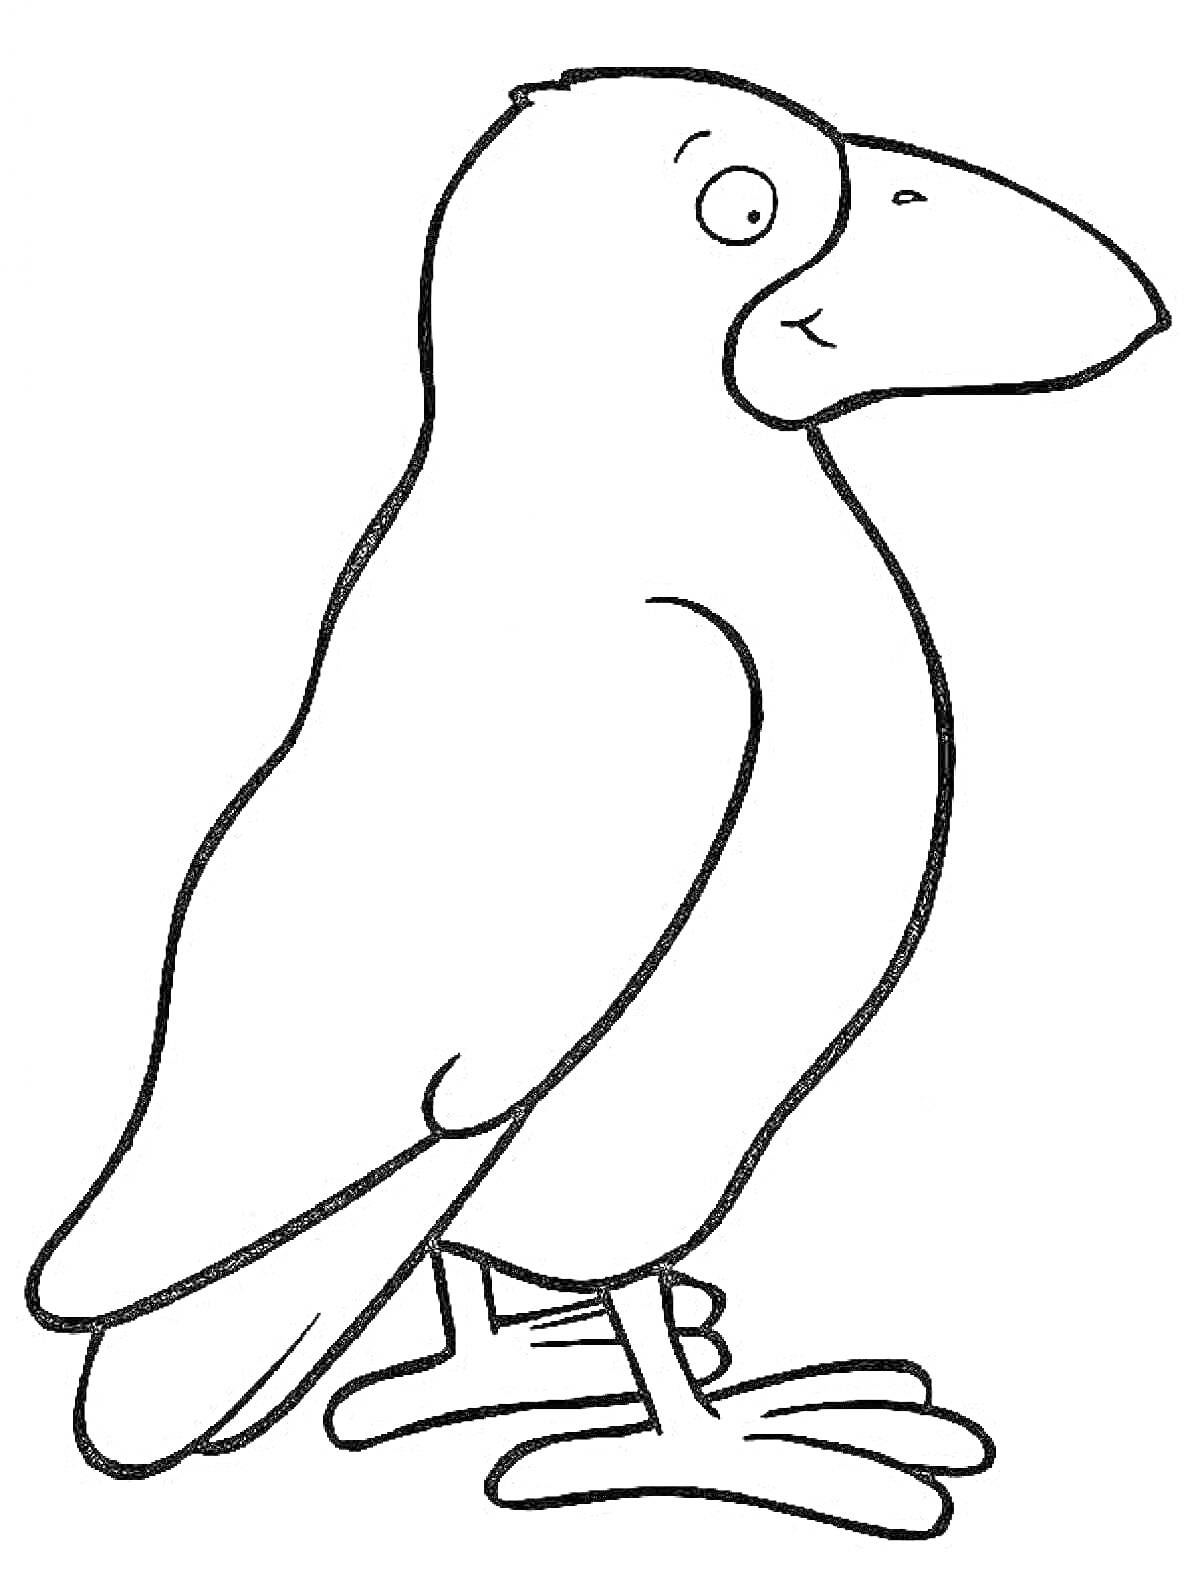 Раскраска Раскраска ворона для детей с крупным контуром и большим клювом